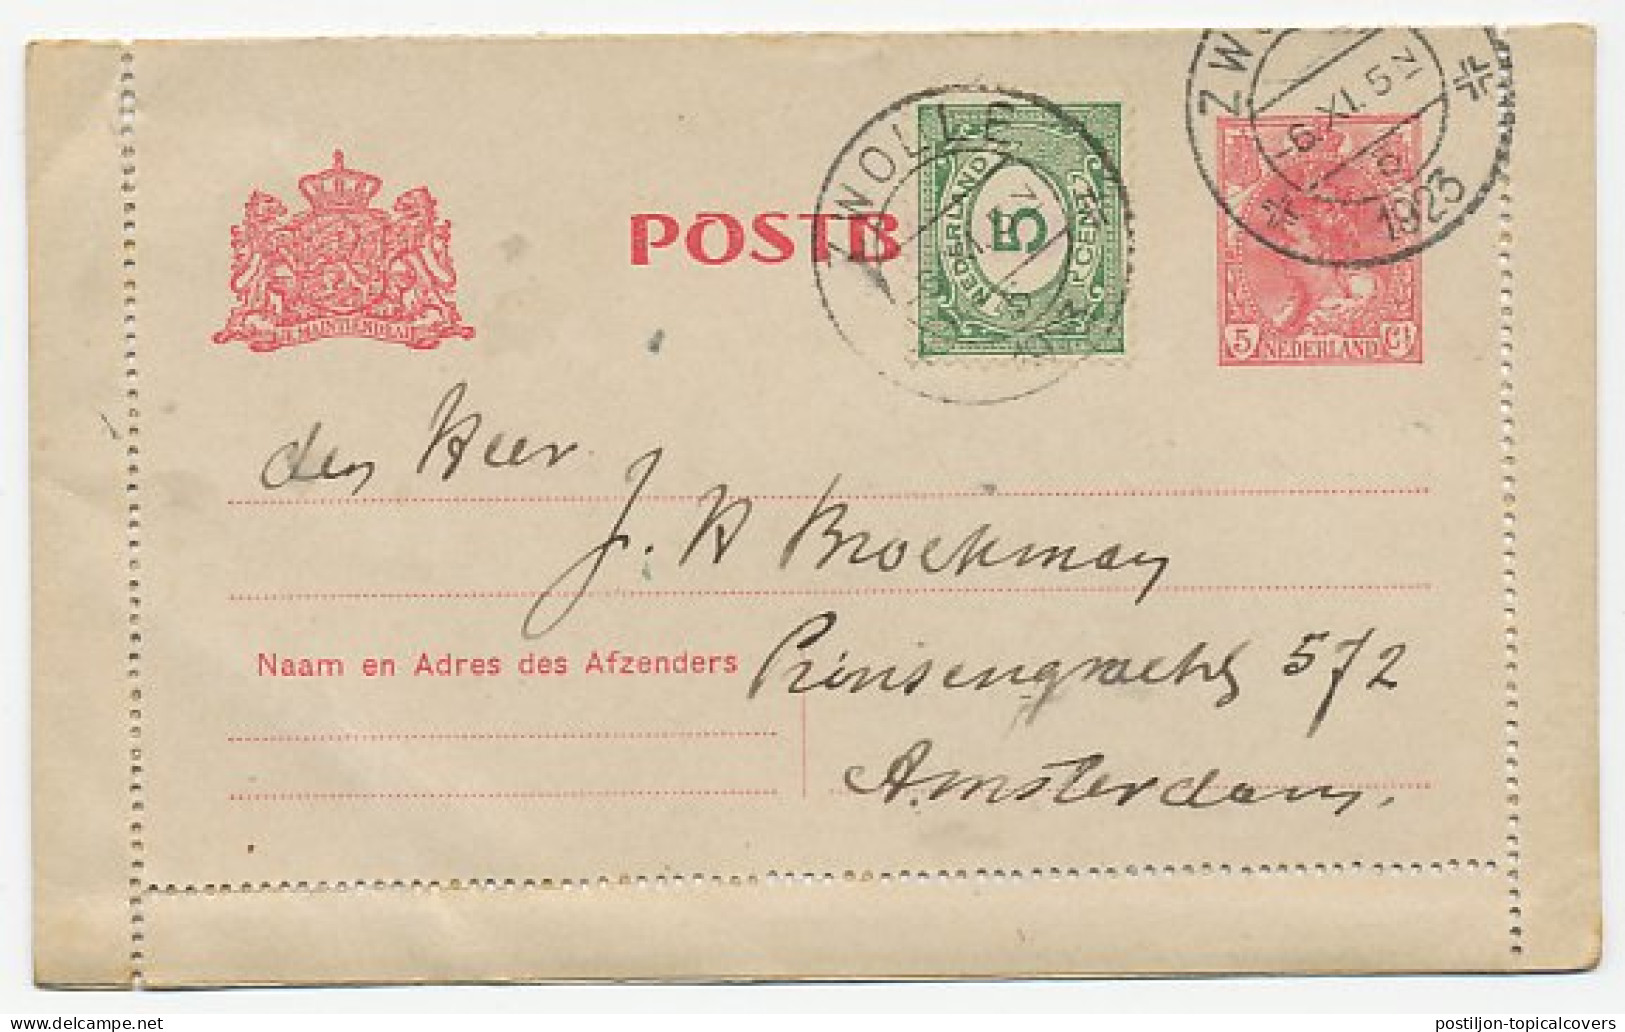 Postblad G. 14 / Bijfrankering Zwolle - Amsterdam 1923 - Entiers Postaux